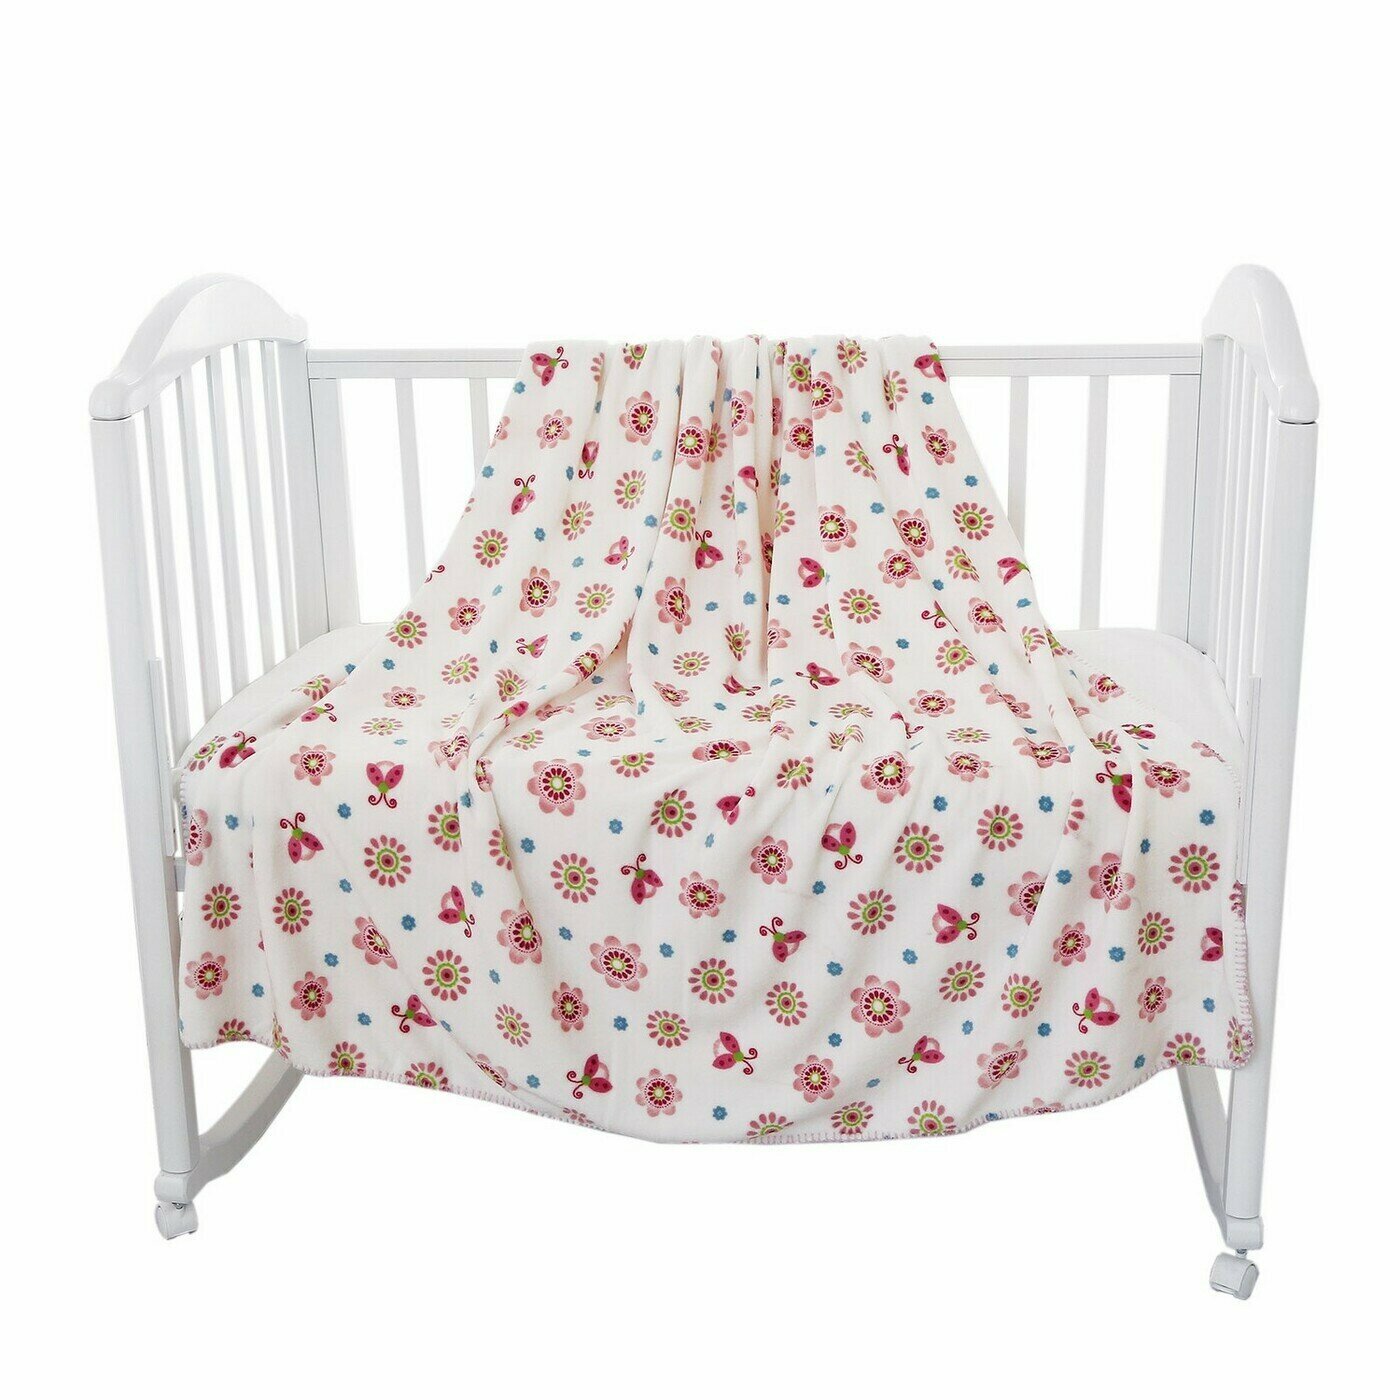 Плед детский для новорожденных 100х140 "Цветы", плед плюшевый в коляску, в кроватку, на выписку/покрывало на кровать